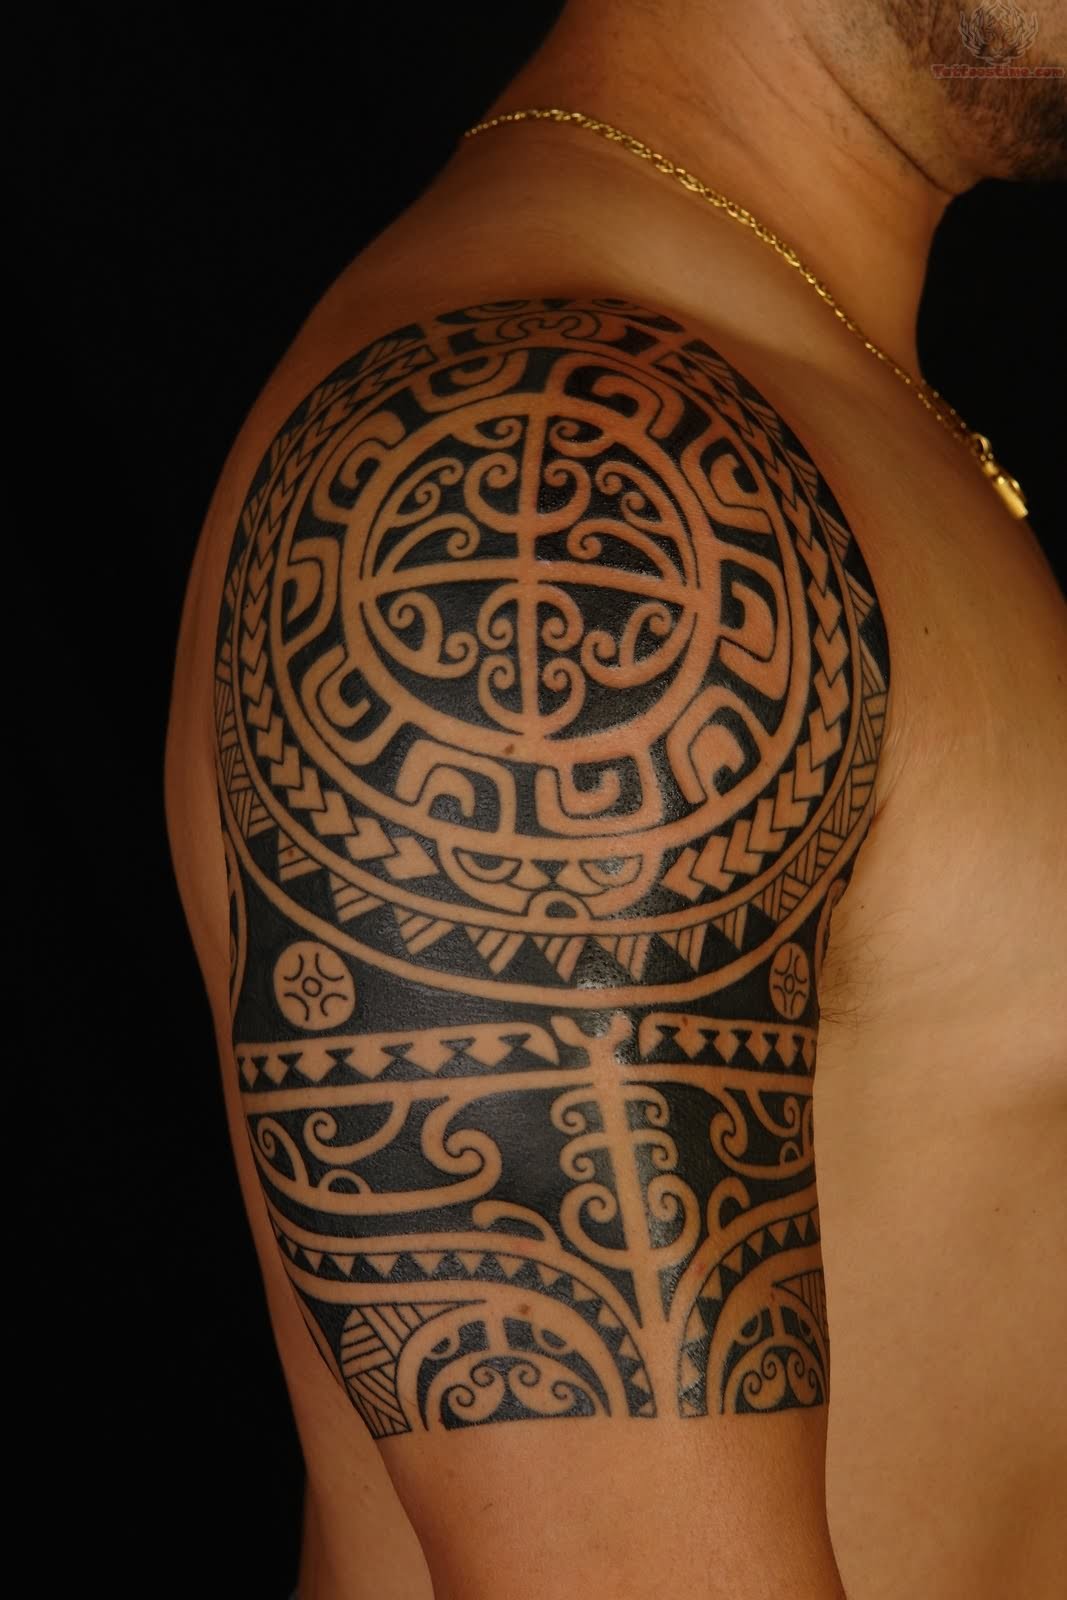 Hawaiian tattoo on arm